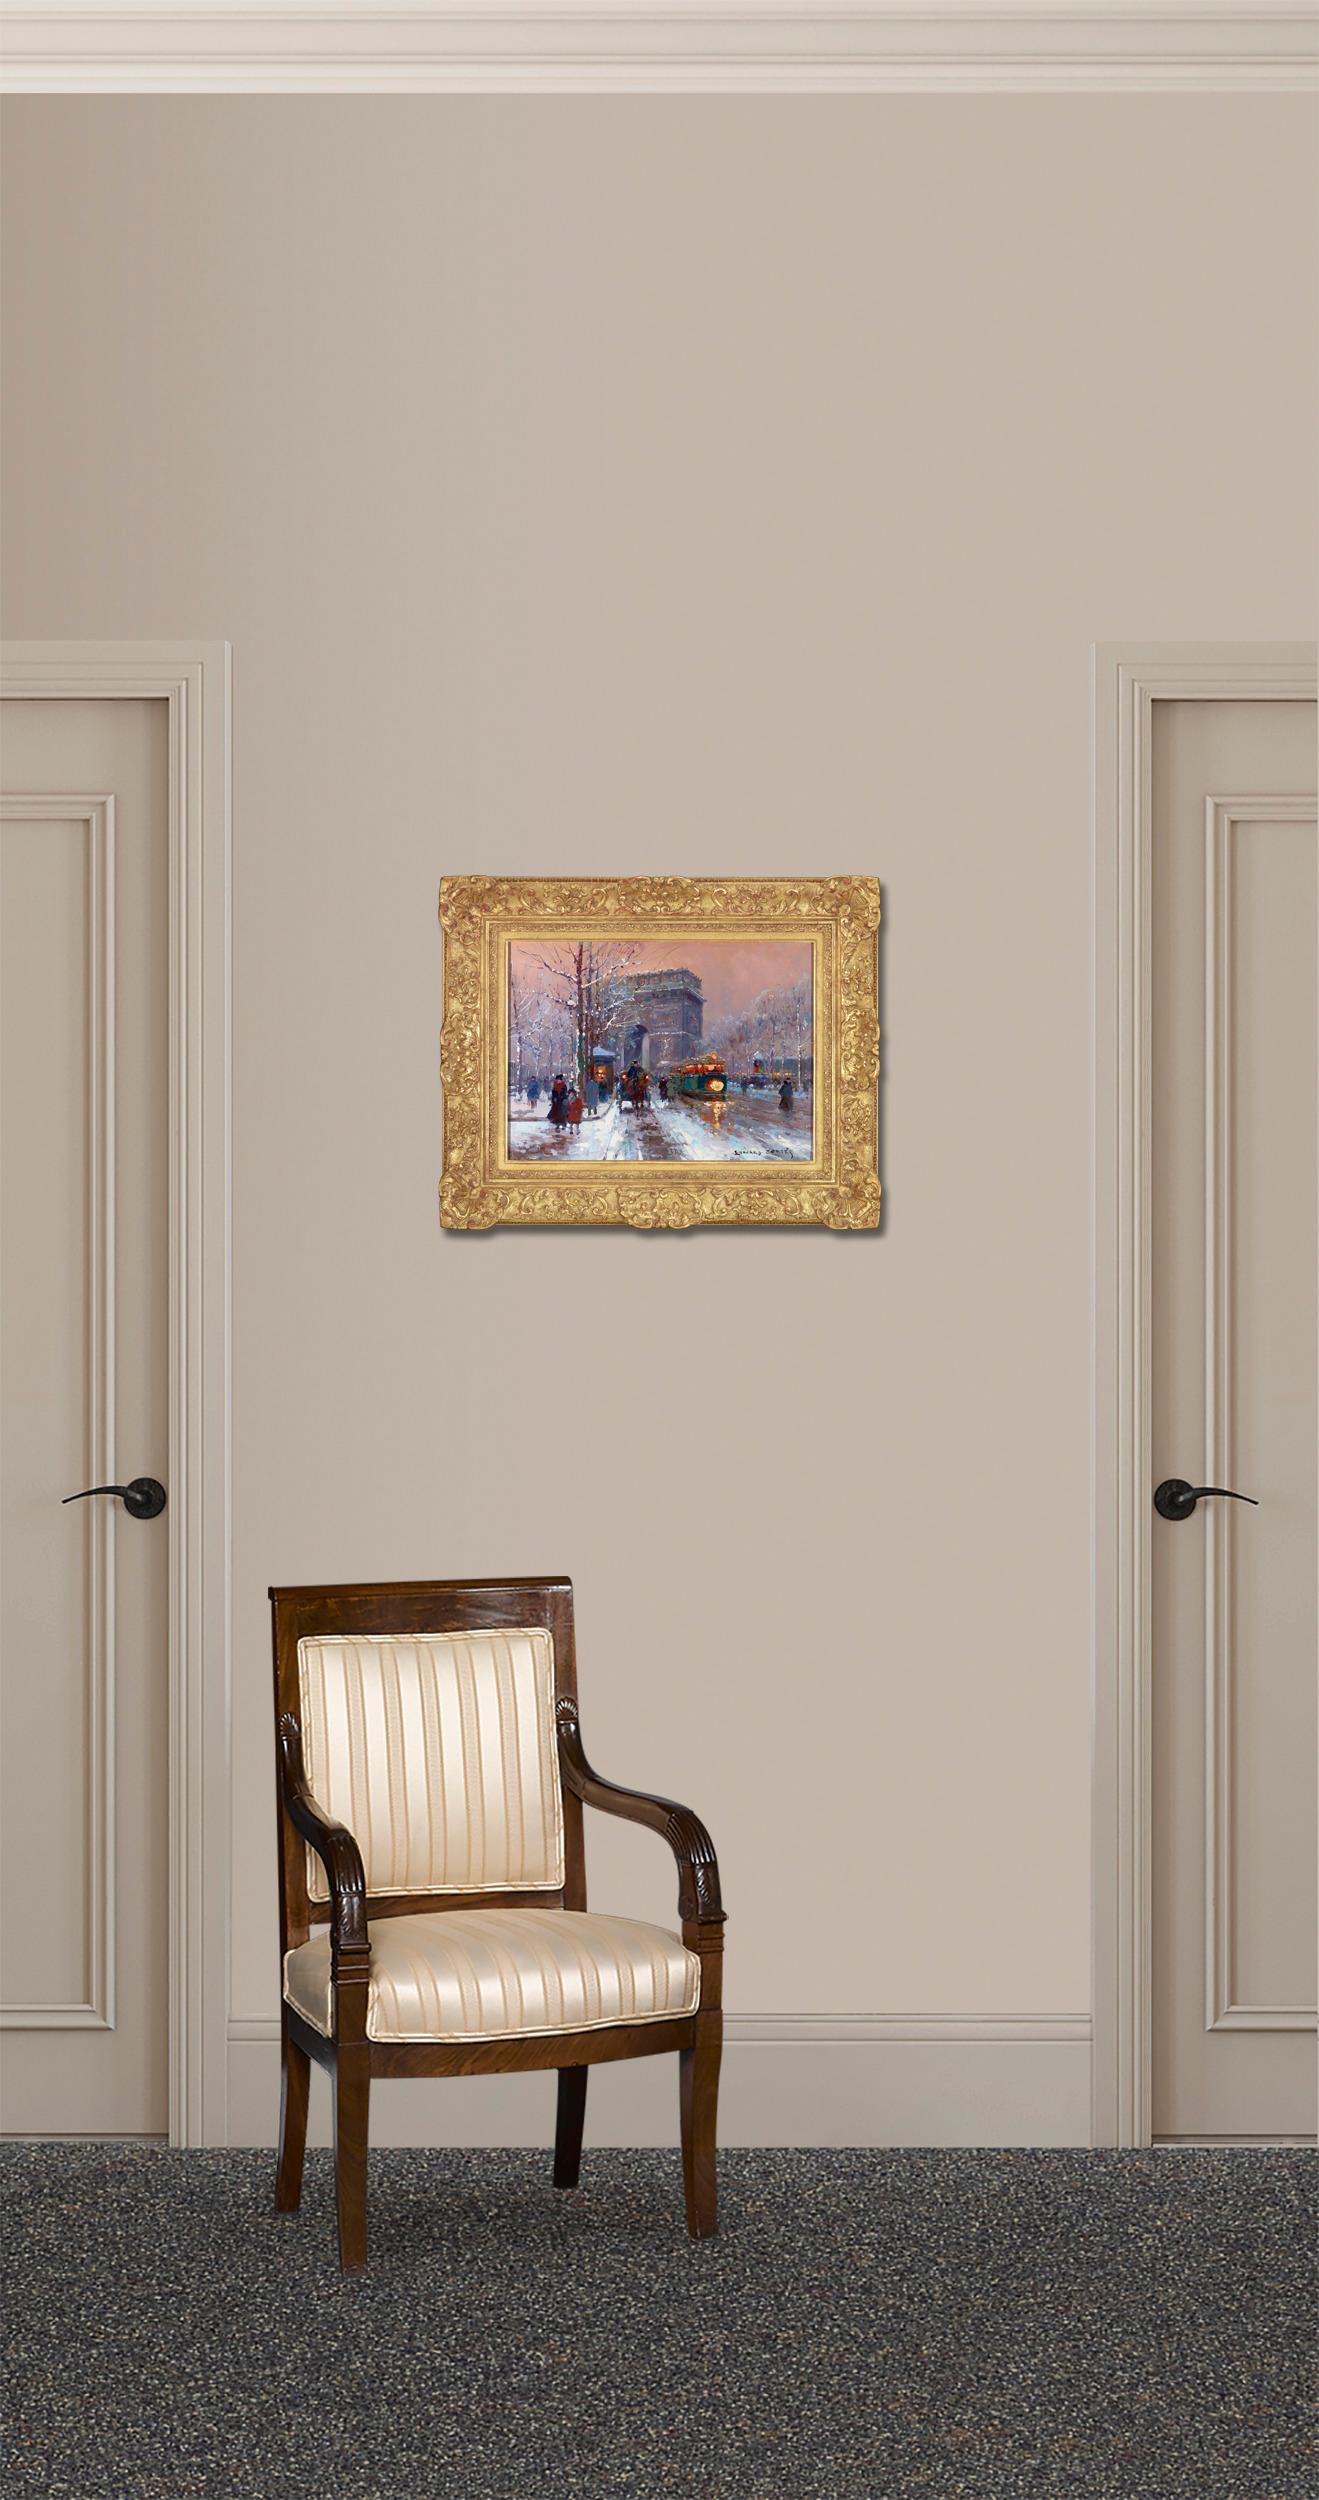 L'artiste français Edouard Léon Cortès est célèbre pour ses toiles qui représentent les grands boulevards et les arcades de Paris. Le sujet de cette huile est le légendaire Arc de Triomphe:: l'un des points de repère les plus reconnaissables de